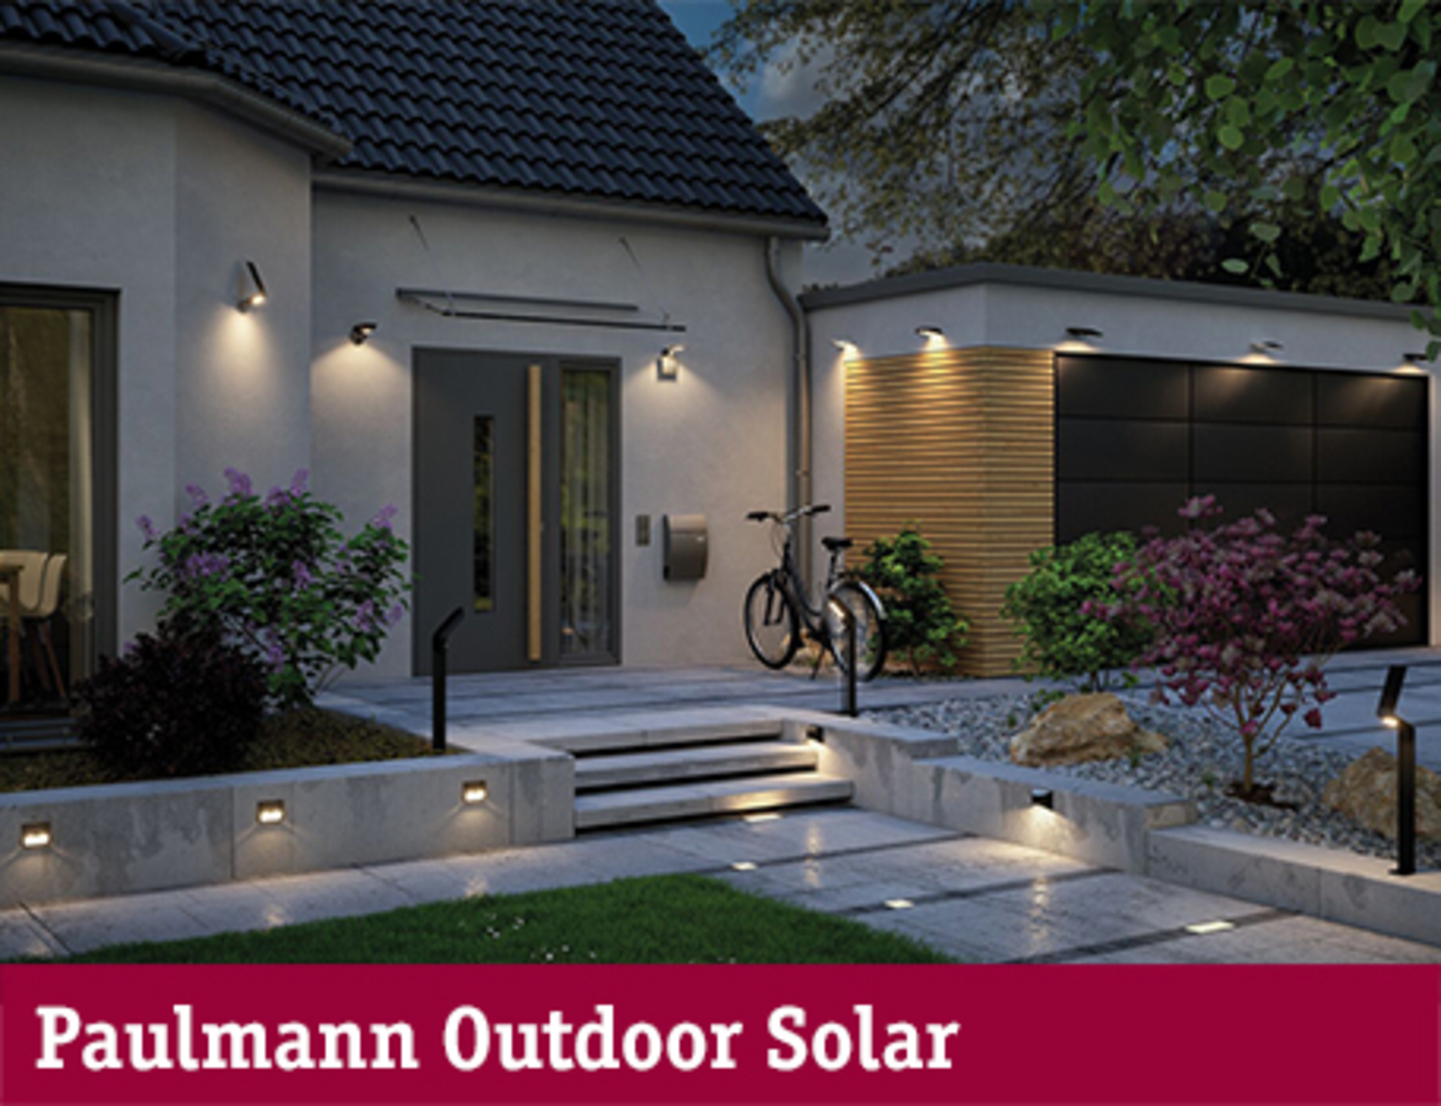 Paulmann Outdoor Solar